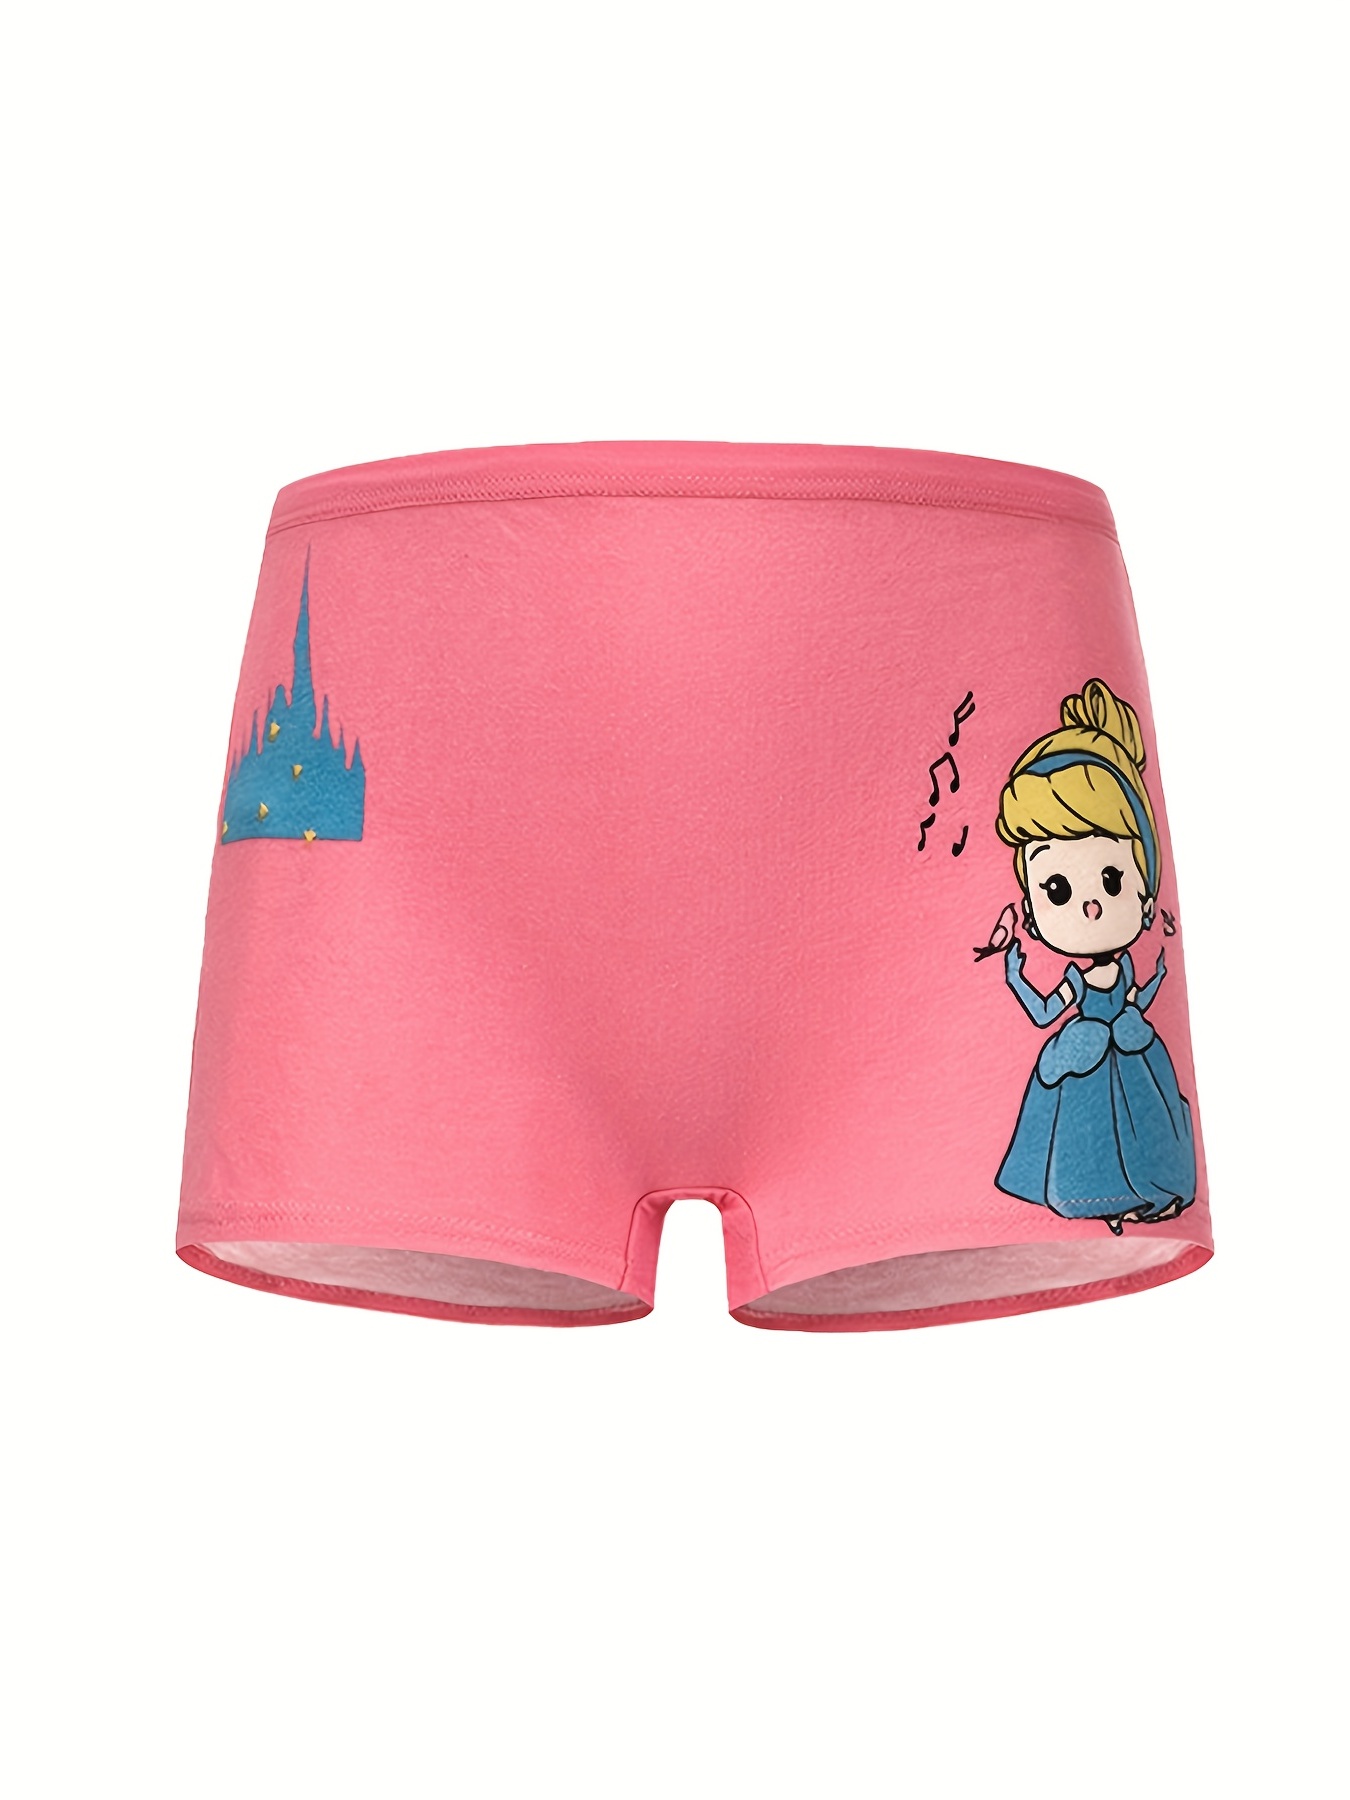 5-pack Cotton Boxer Briefs - Light pink/Disney princesses - Kids